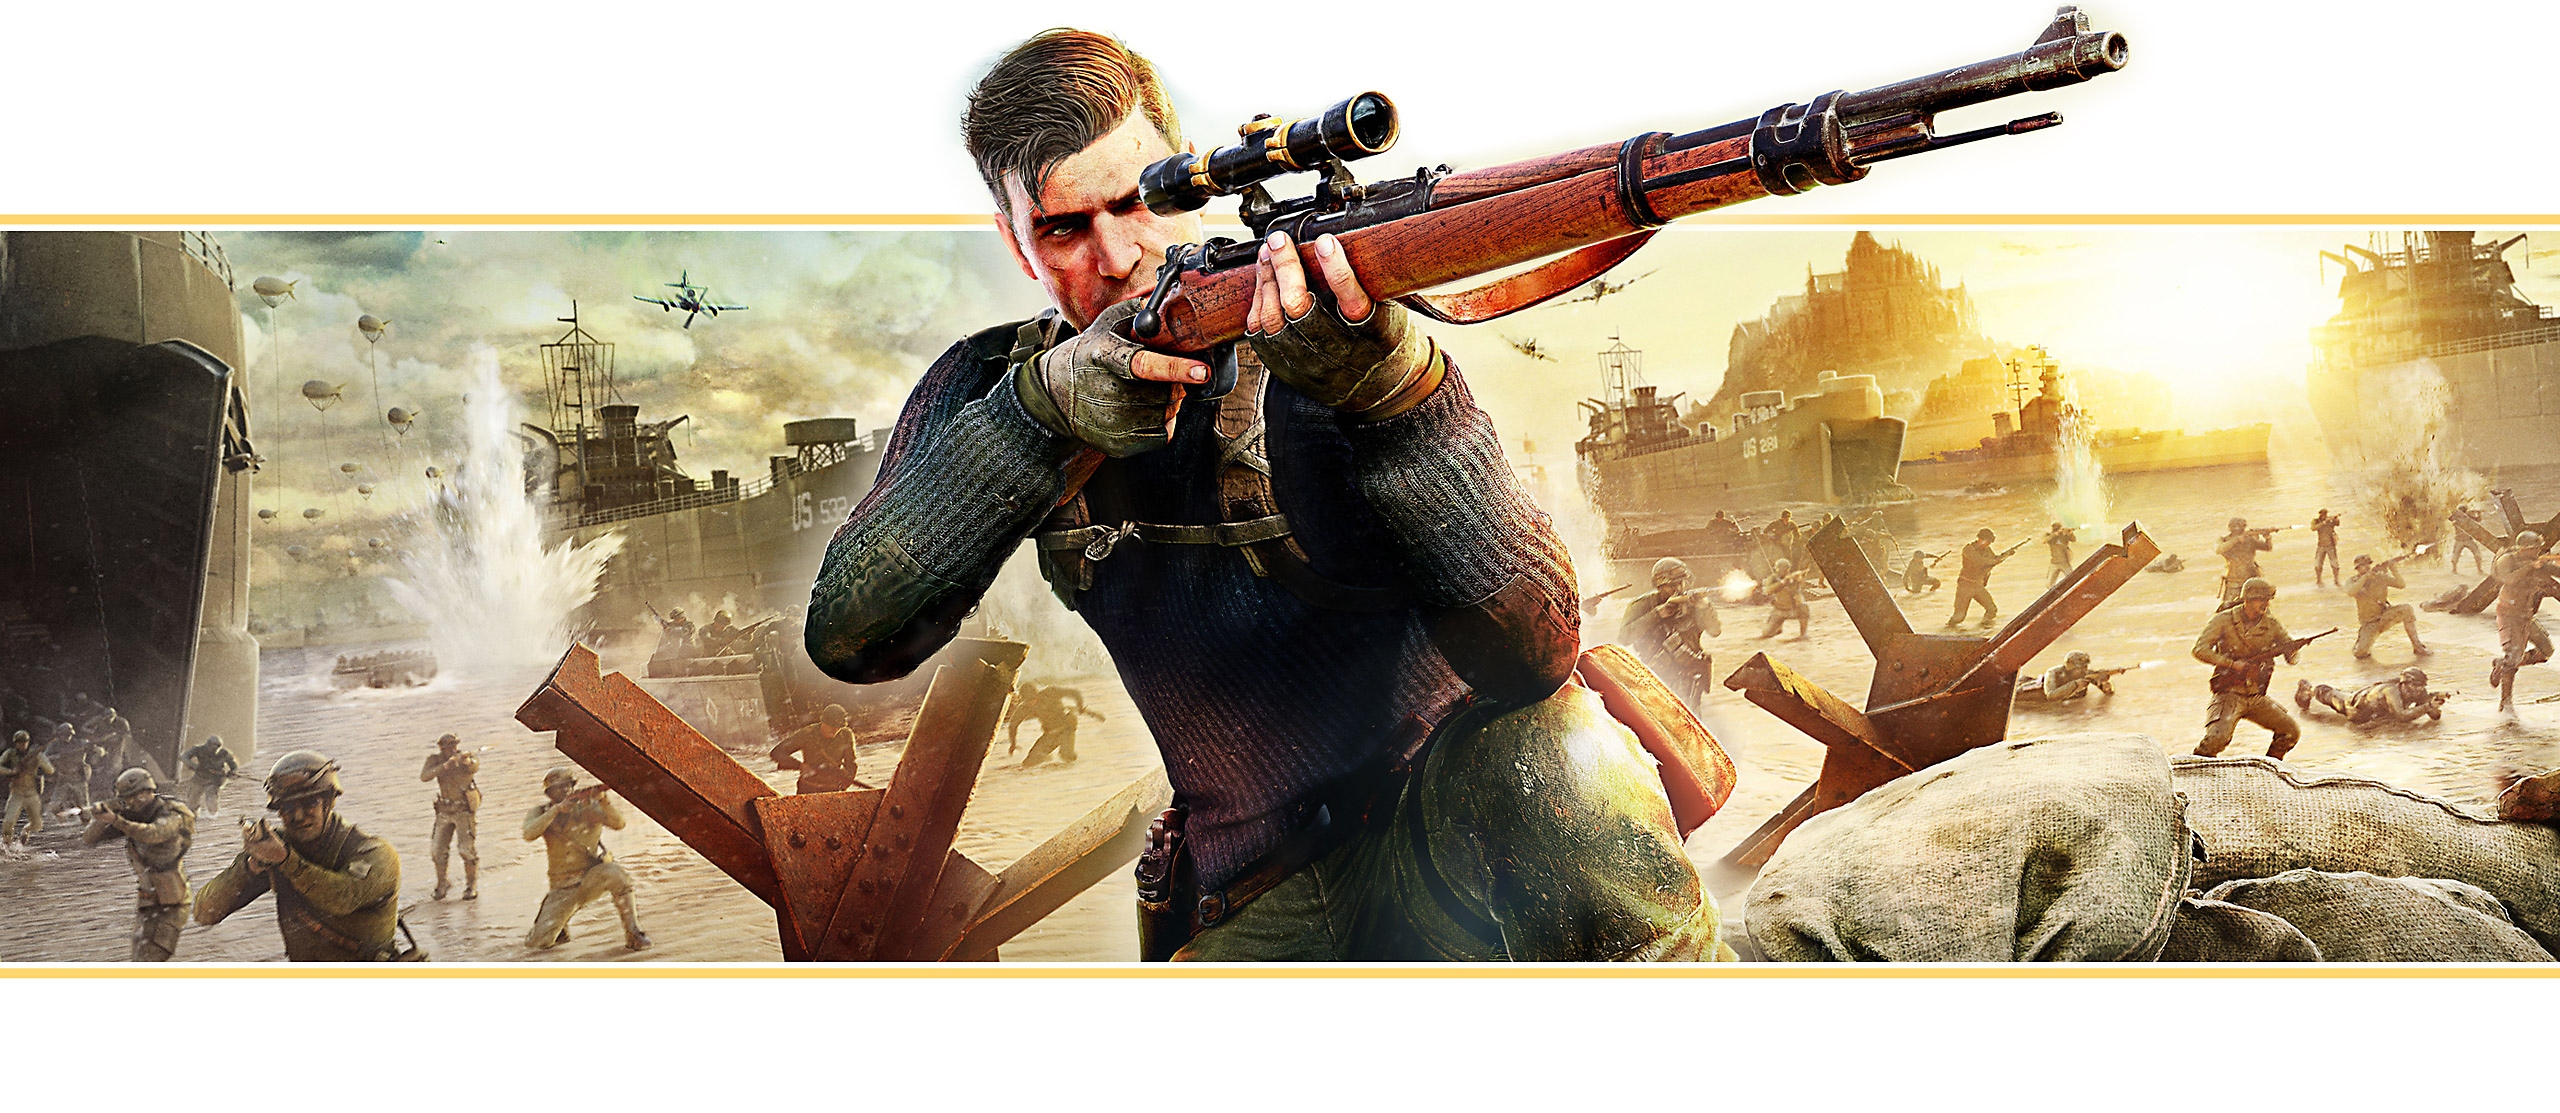 『Sniper Elite 5』のキービジュアルをベースにしたメインバナー メインキャラクターが狙撃銃の狙いを定めている。